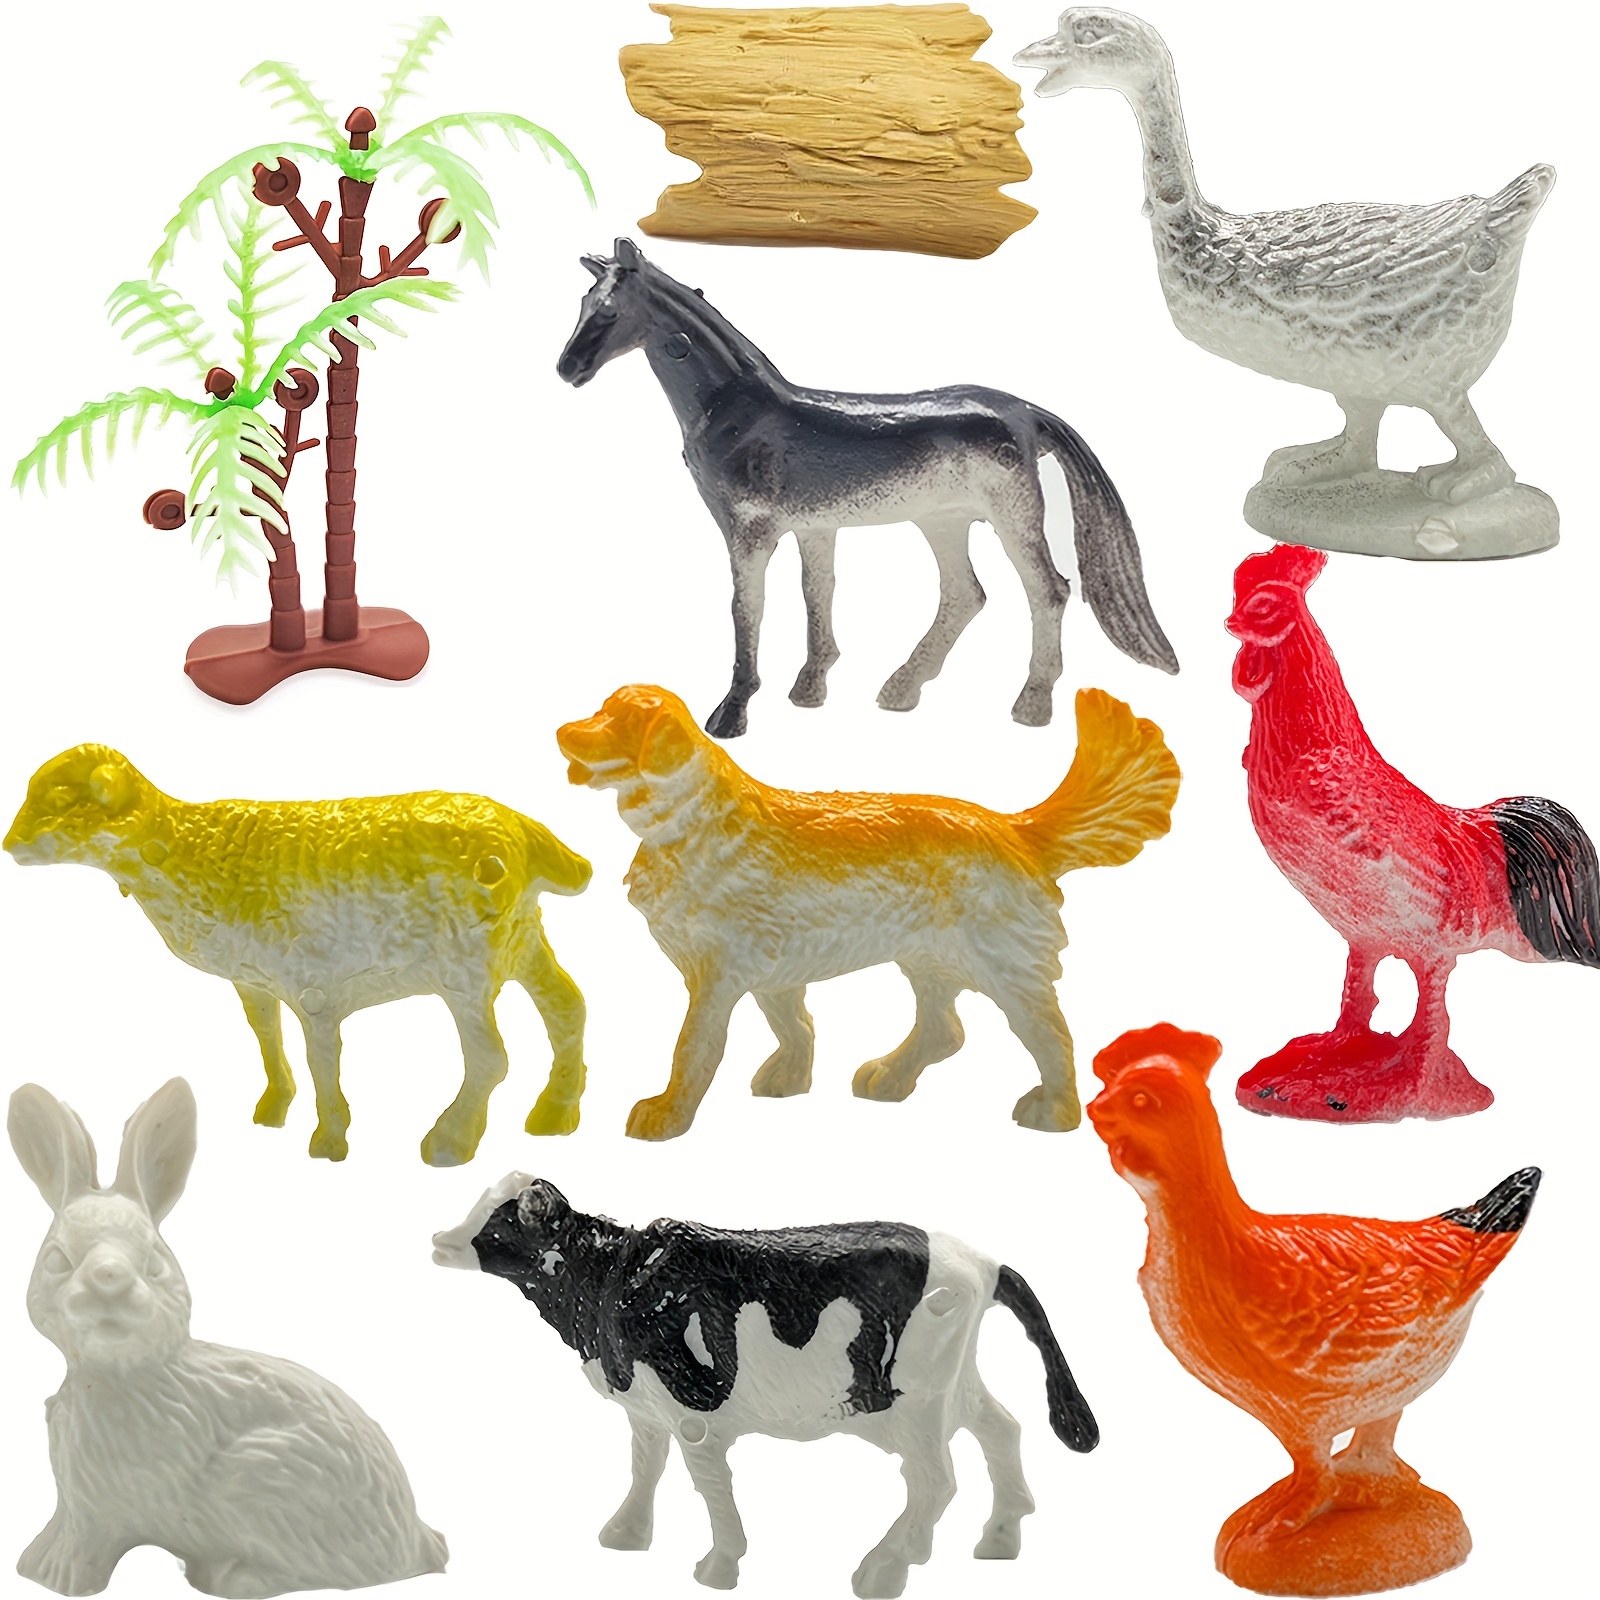  BOLZRA Figuras de animales de granja grandes, simulación  realista, figuras de granja de plástico gigante, juguetes de animales,  juego educativo de aprendizaje, recuerdos de fiesta, juguetes de baño,  adornos para cupcakes